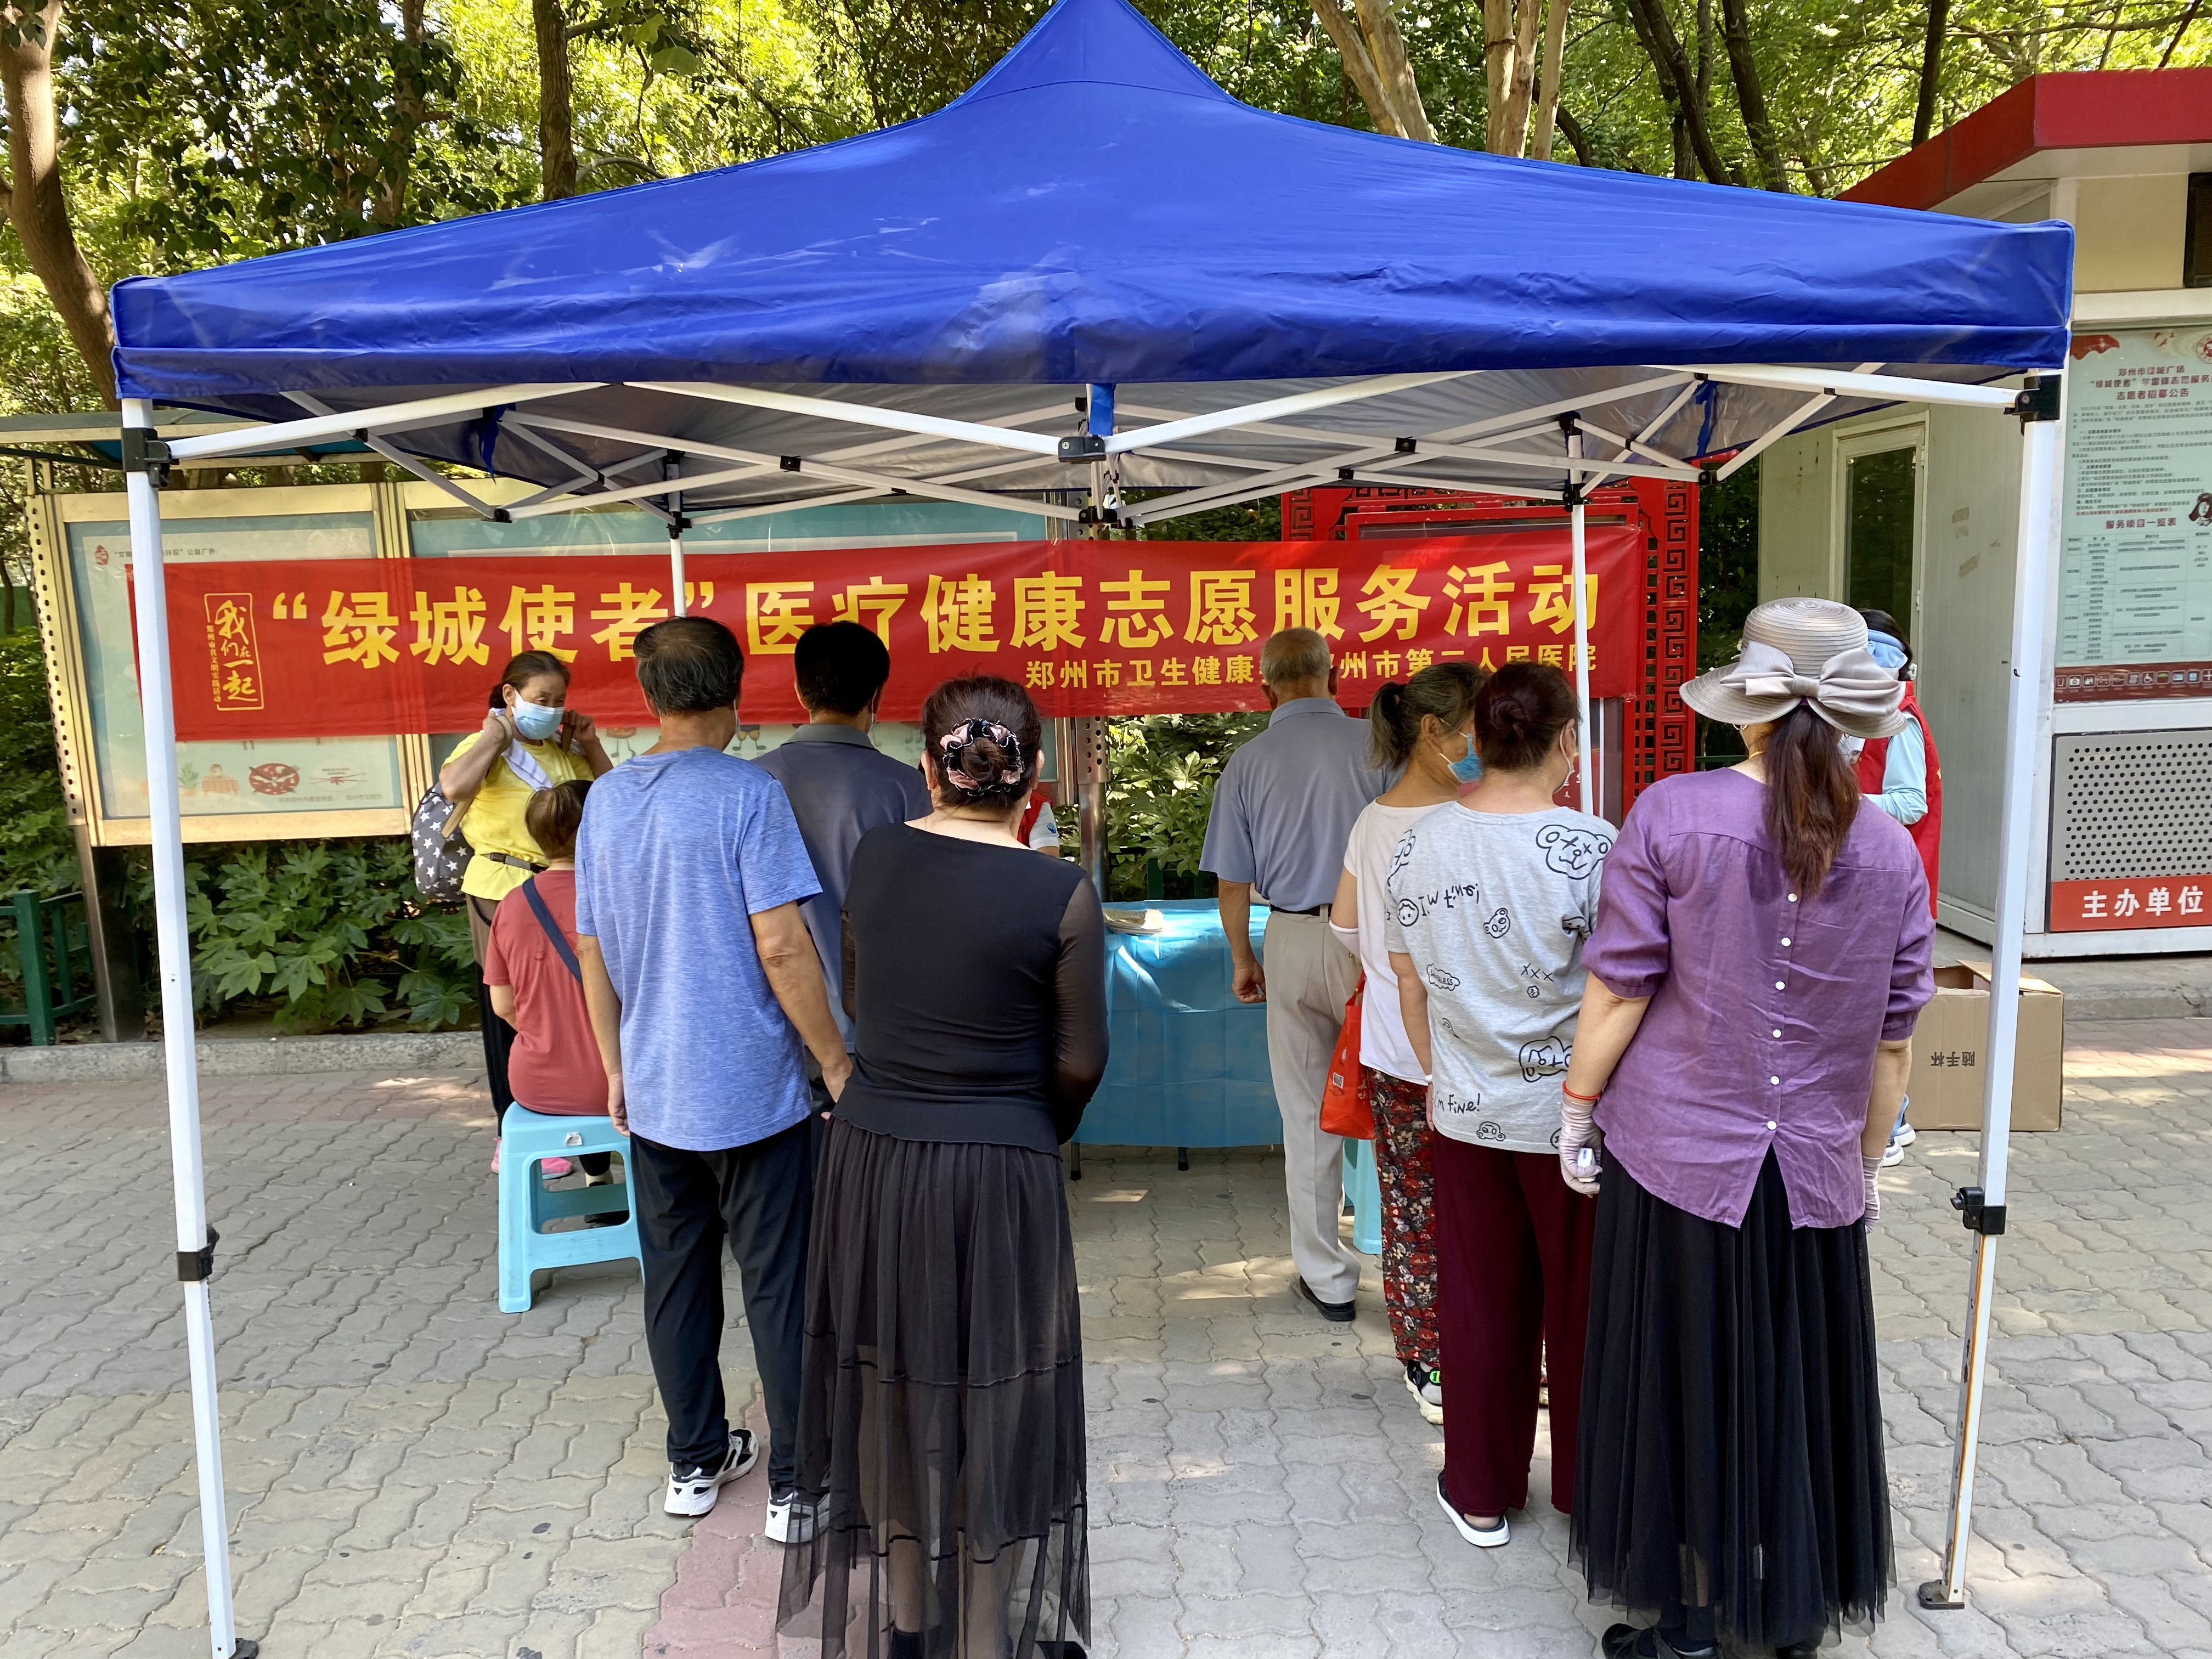 6月18日，郑州市第二人民医院“绿城使者——健康卫士”医疗健康志愿服务队来到绿城广场，开展健康义诊、健康教育活动。.jpg